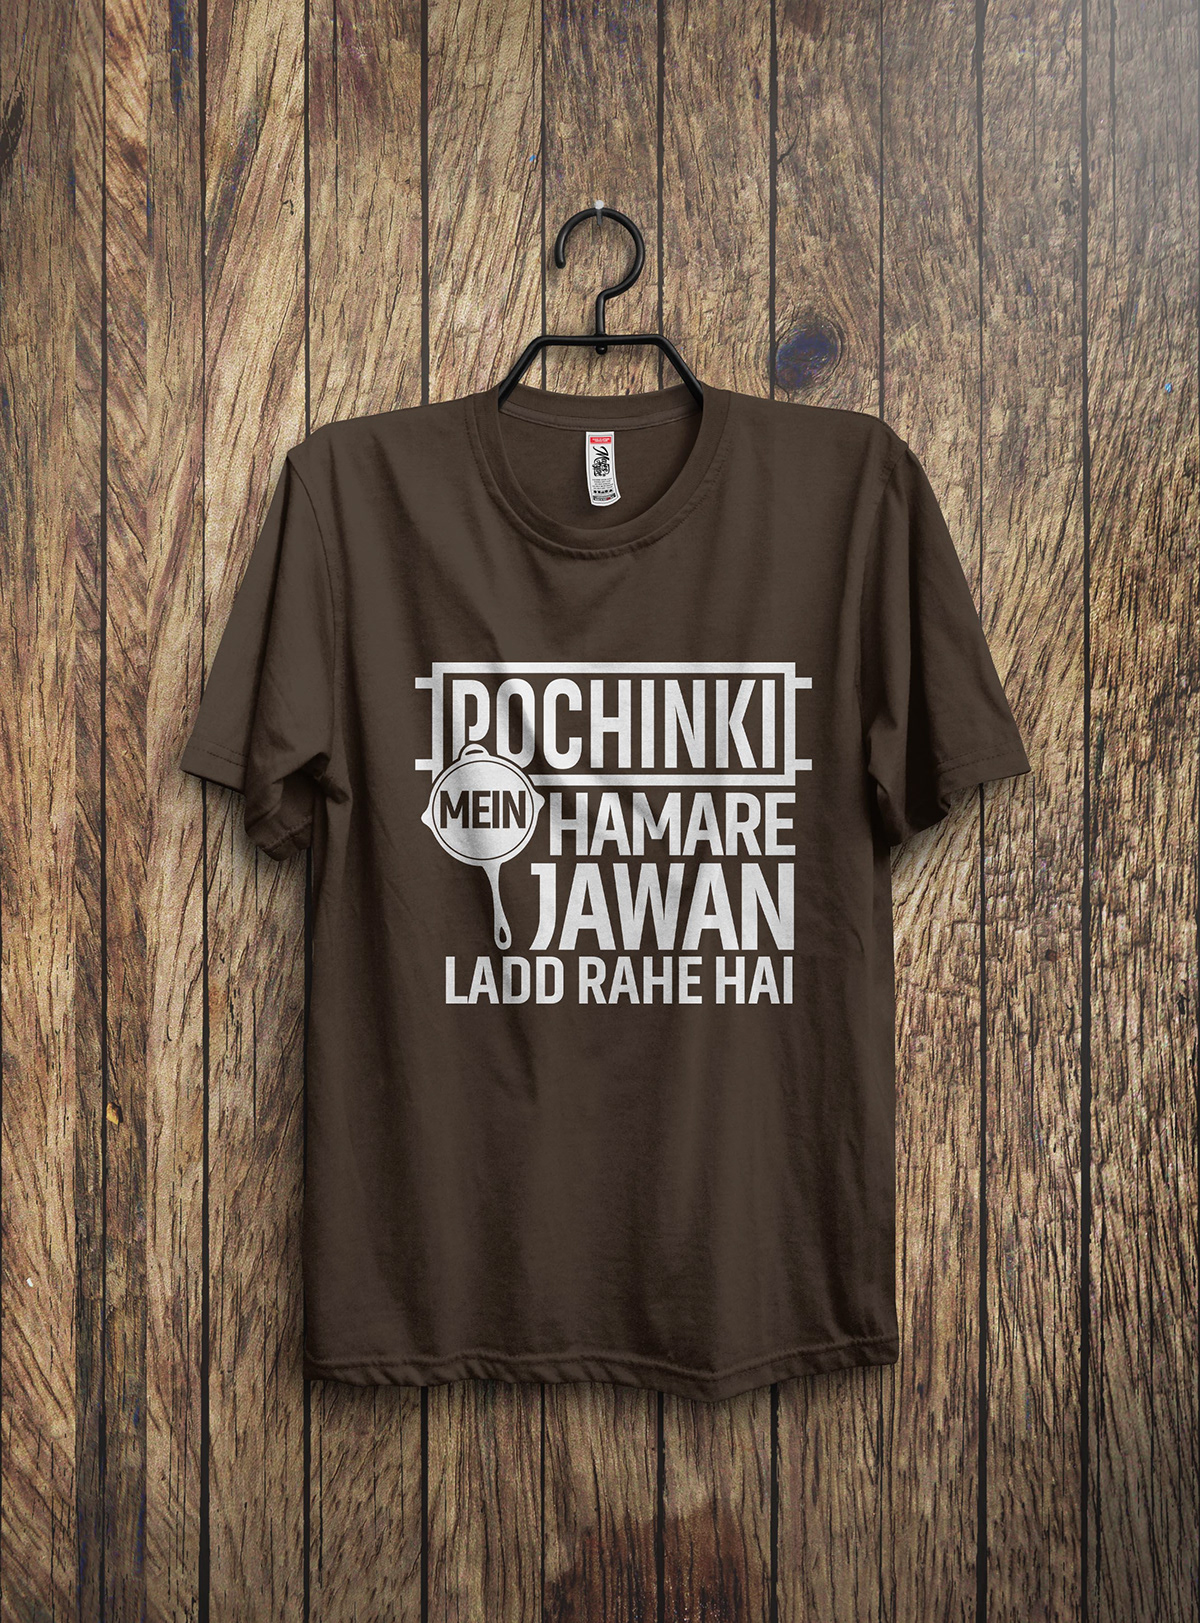 Bappy pubg pubg t-shirt pubg tshirt t shirt bundle t shirt designer t-shirt T-Shirt Design